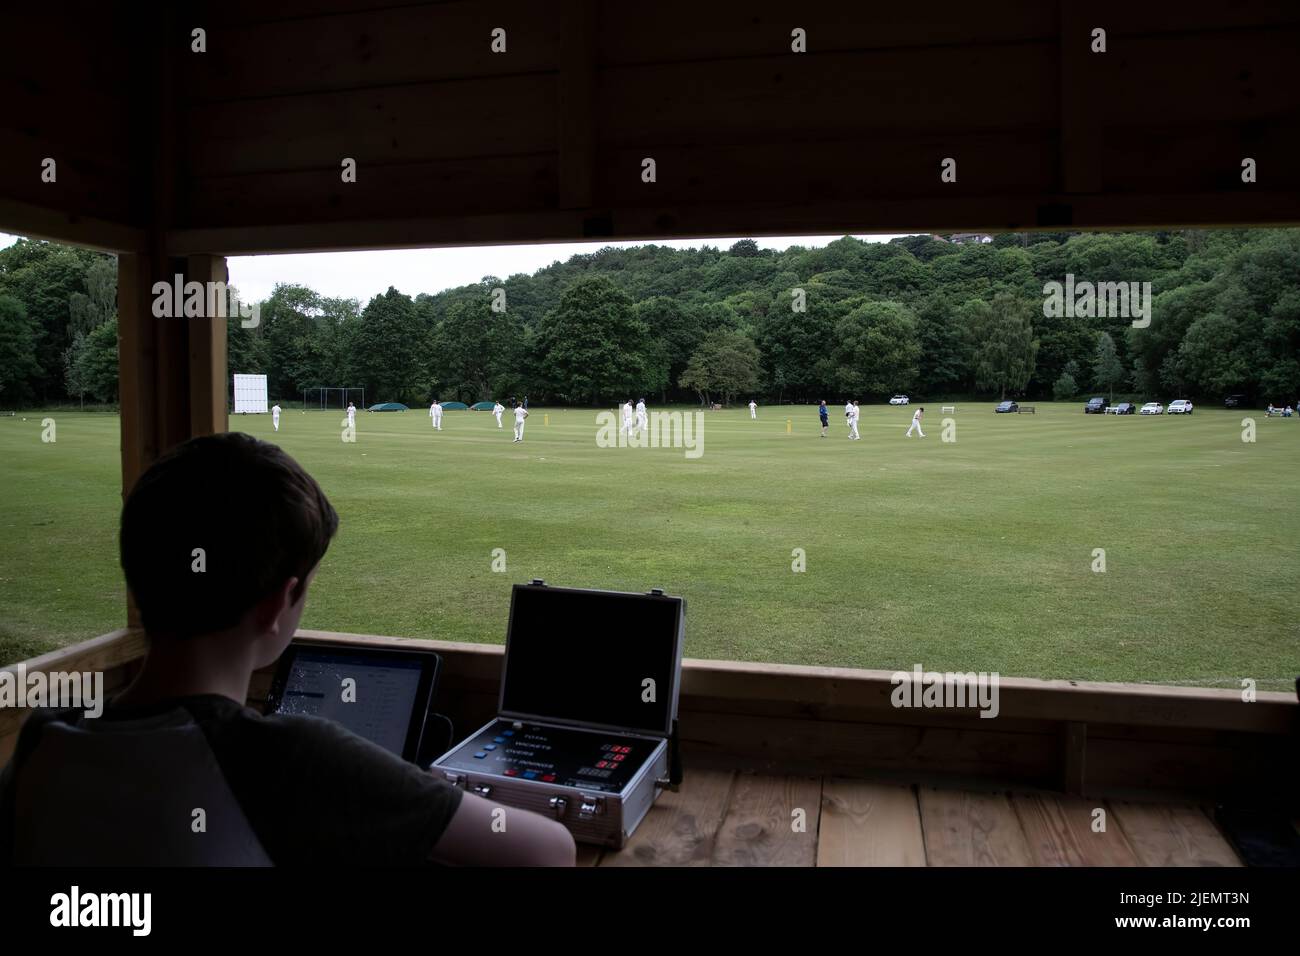 Regardez dans la boîte des joueurs de cricket que le joueur enregistre électroniquement les progrès et un match de cricket du village lors d'un match de cricket de la ligue dans le Yorkshire Banque D'Images